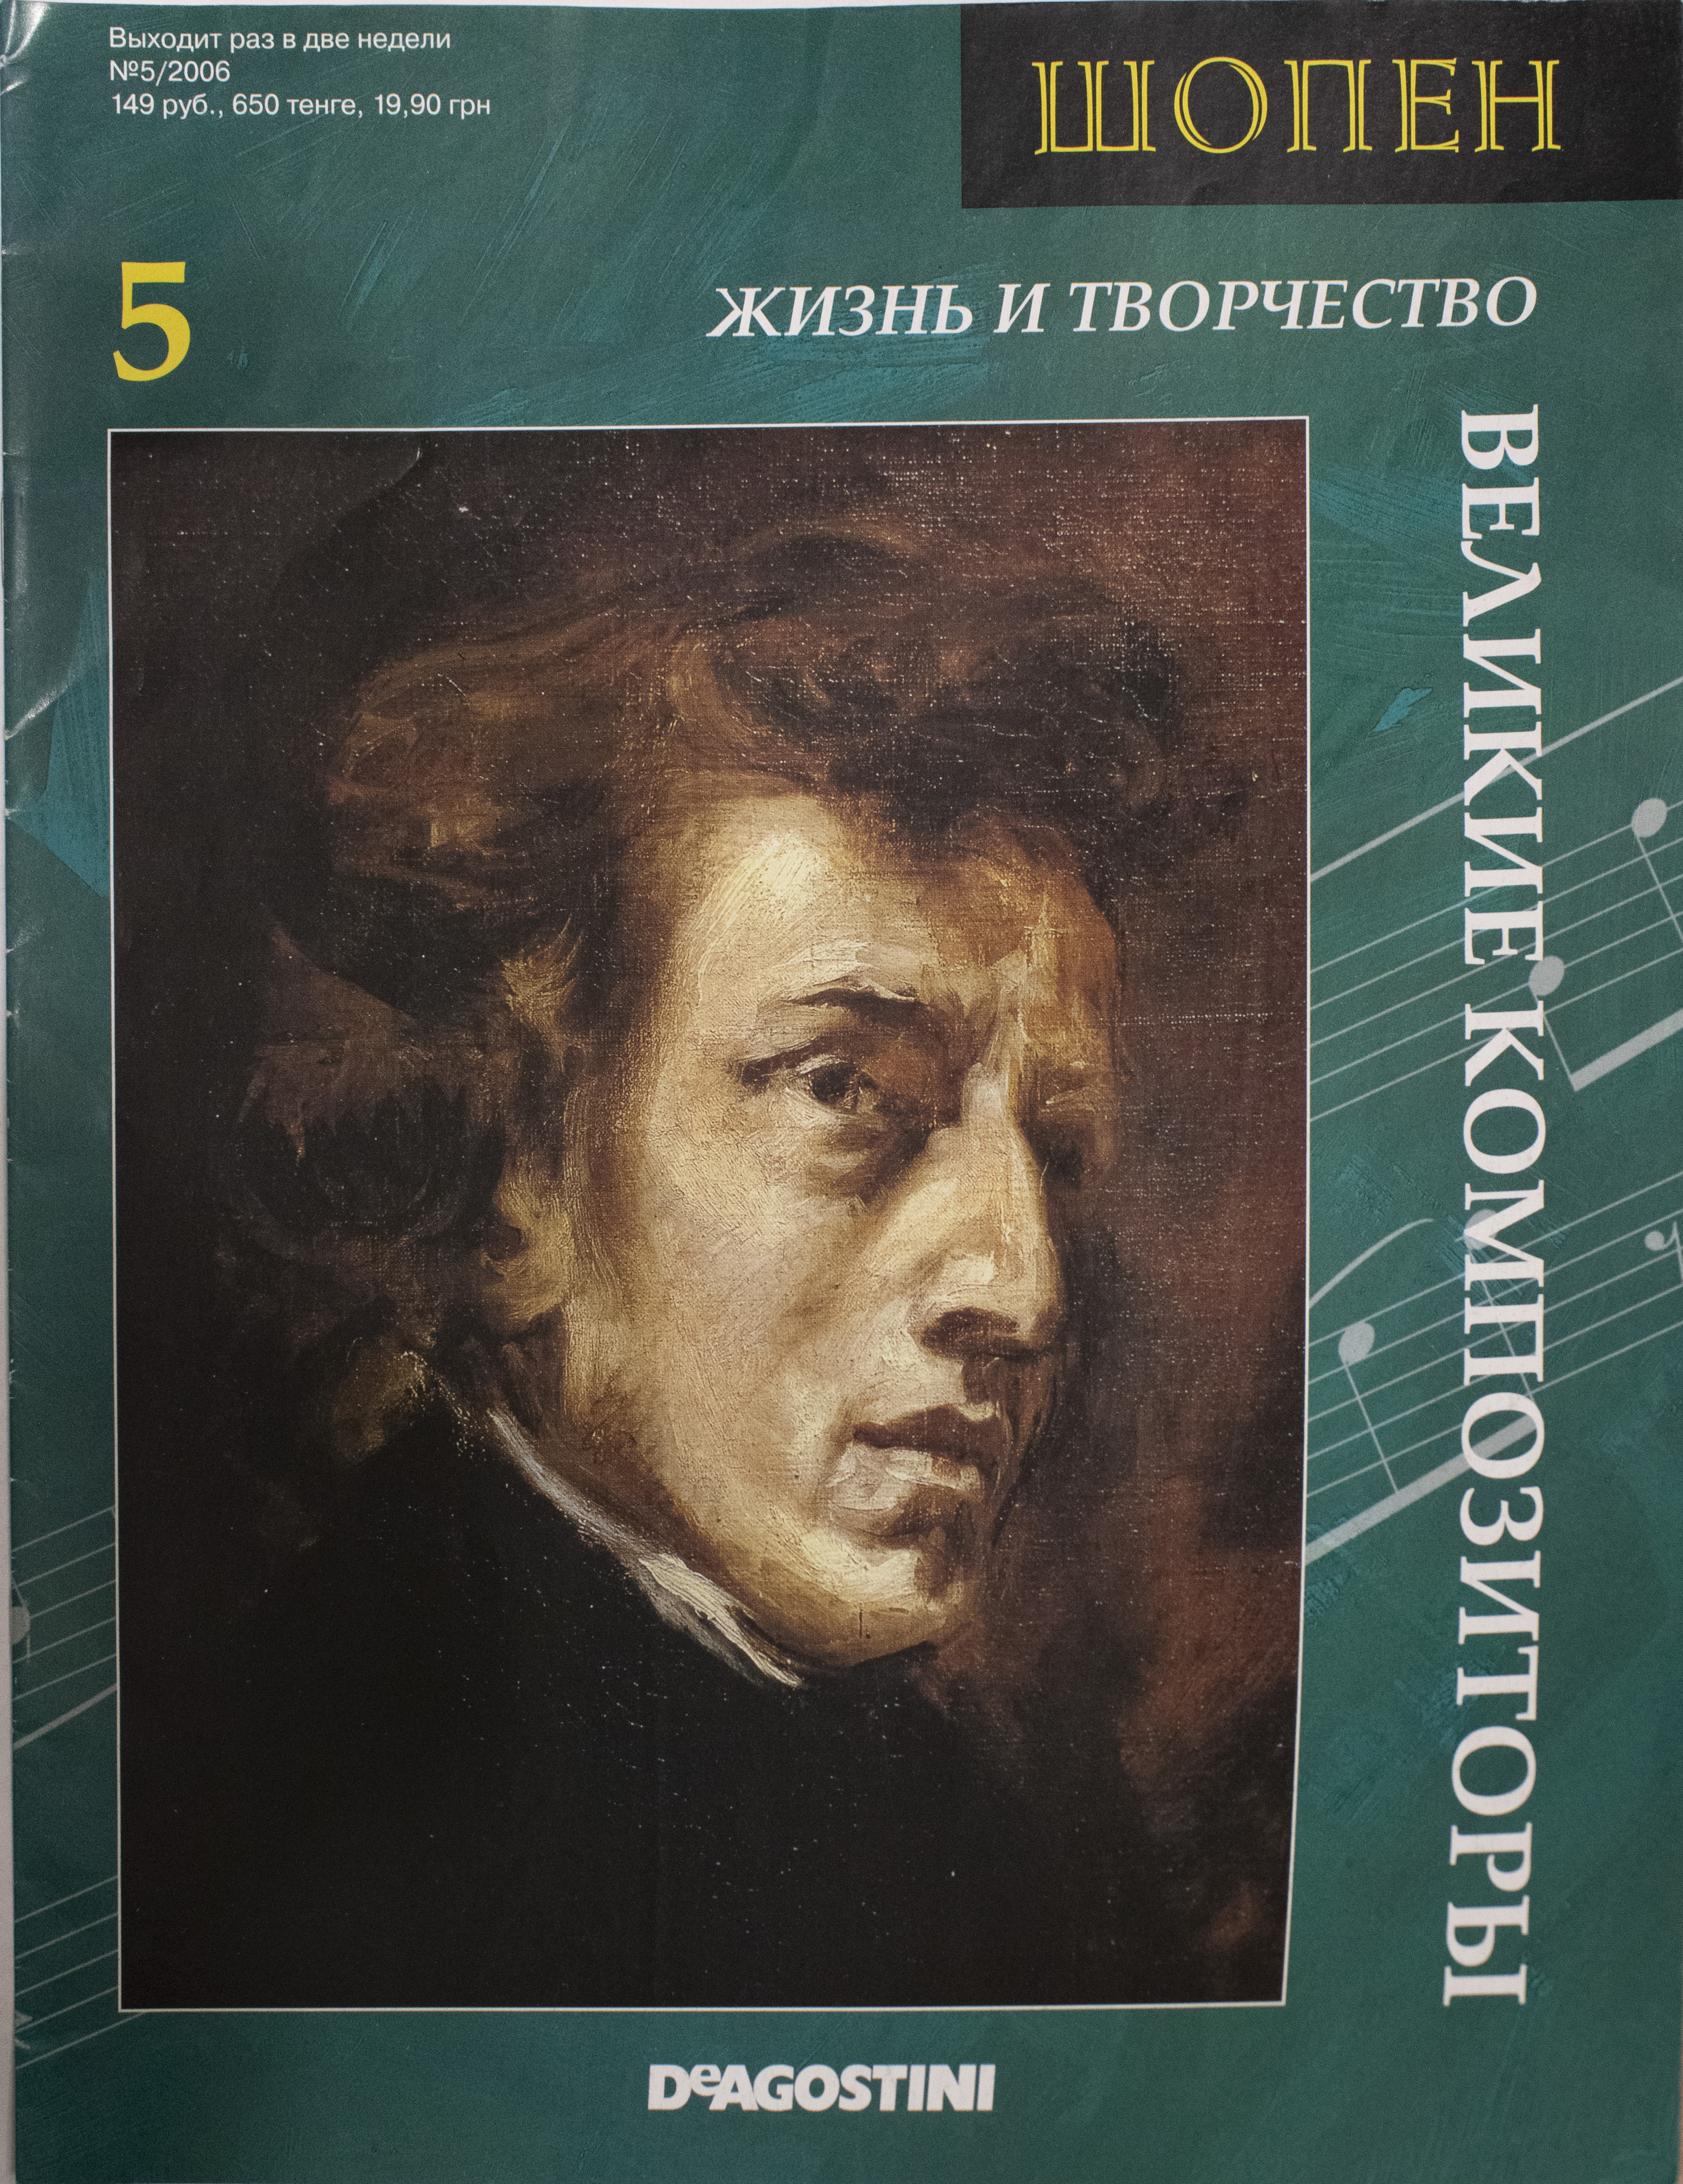 Книга великие композиторы. Обложка книги Шопен. Великие композиторы. Творчество Шопена. Жизнь и творчество Шопена.